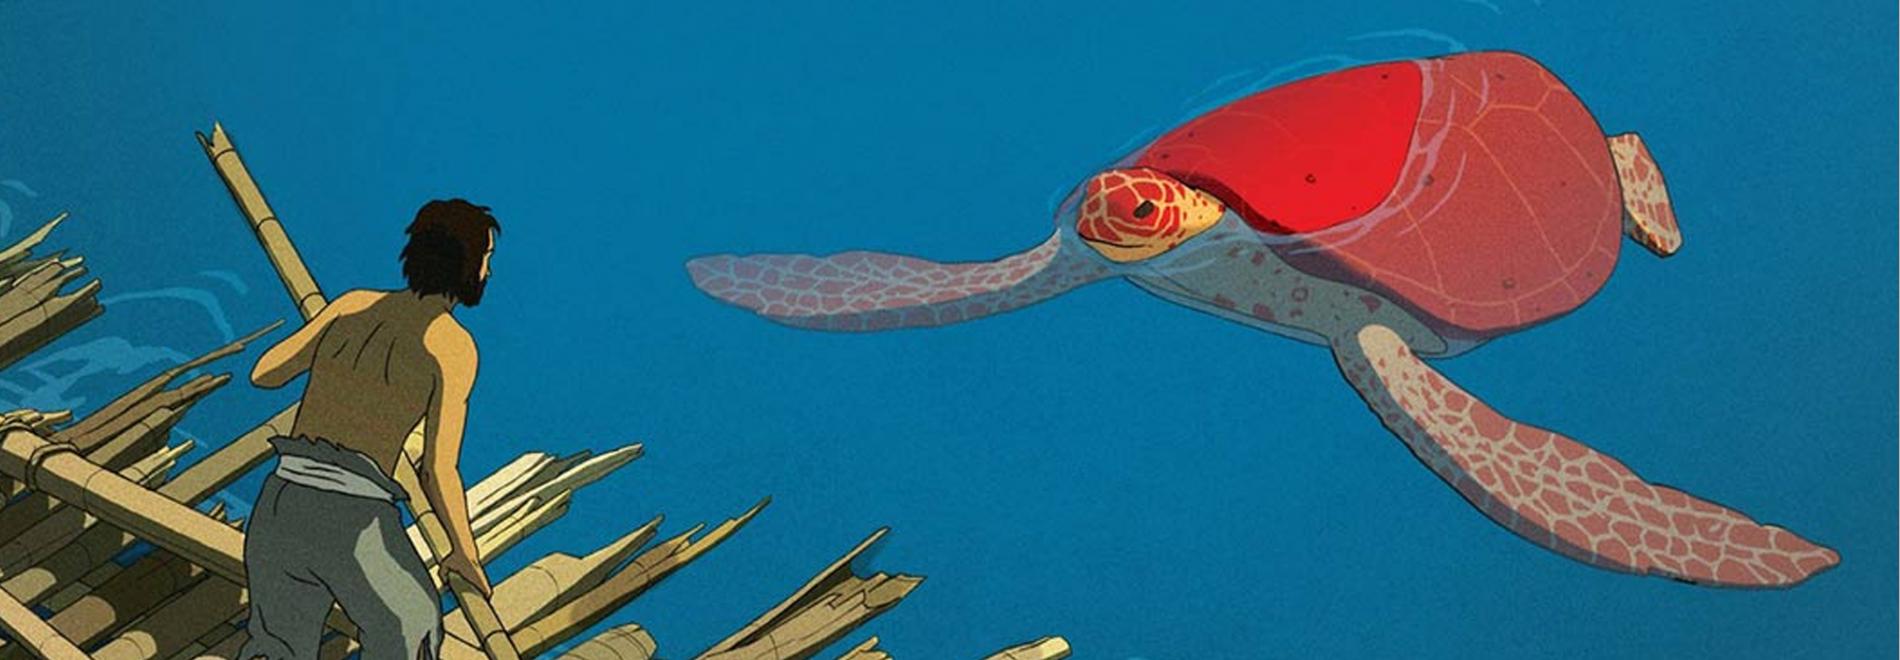 La tortue rouge (Michael Dudok de Wit, 2016)